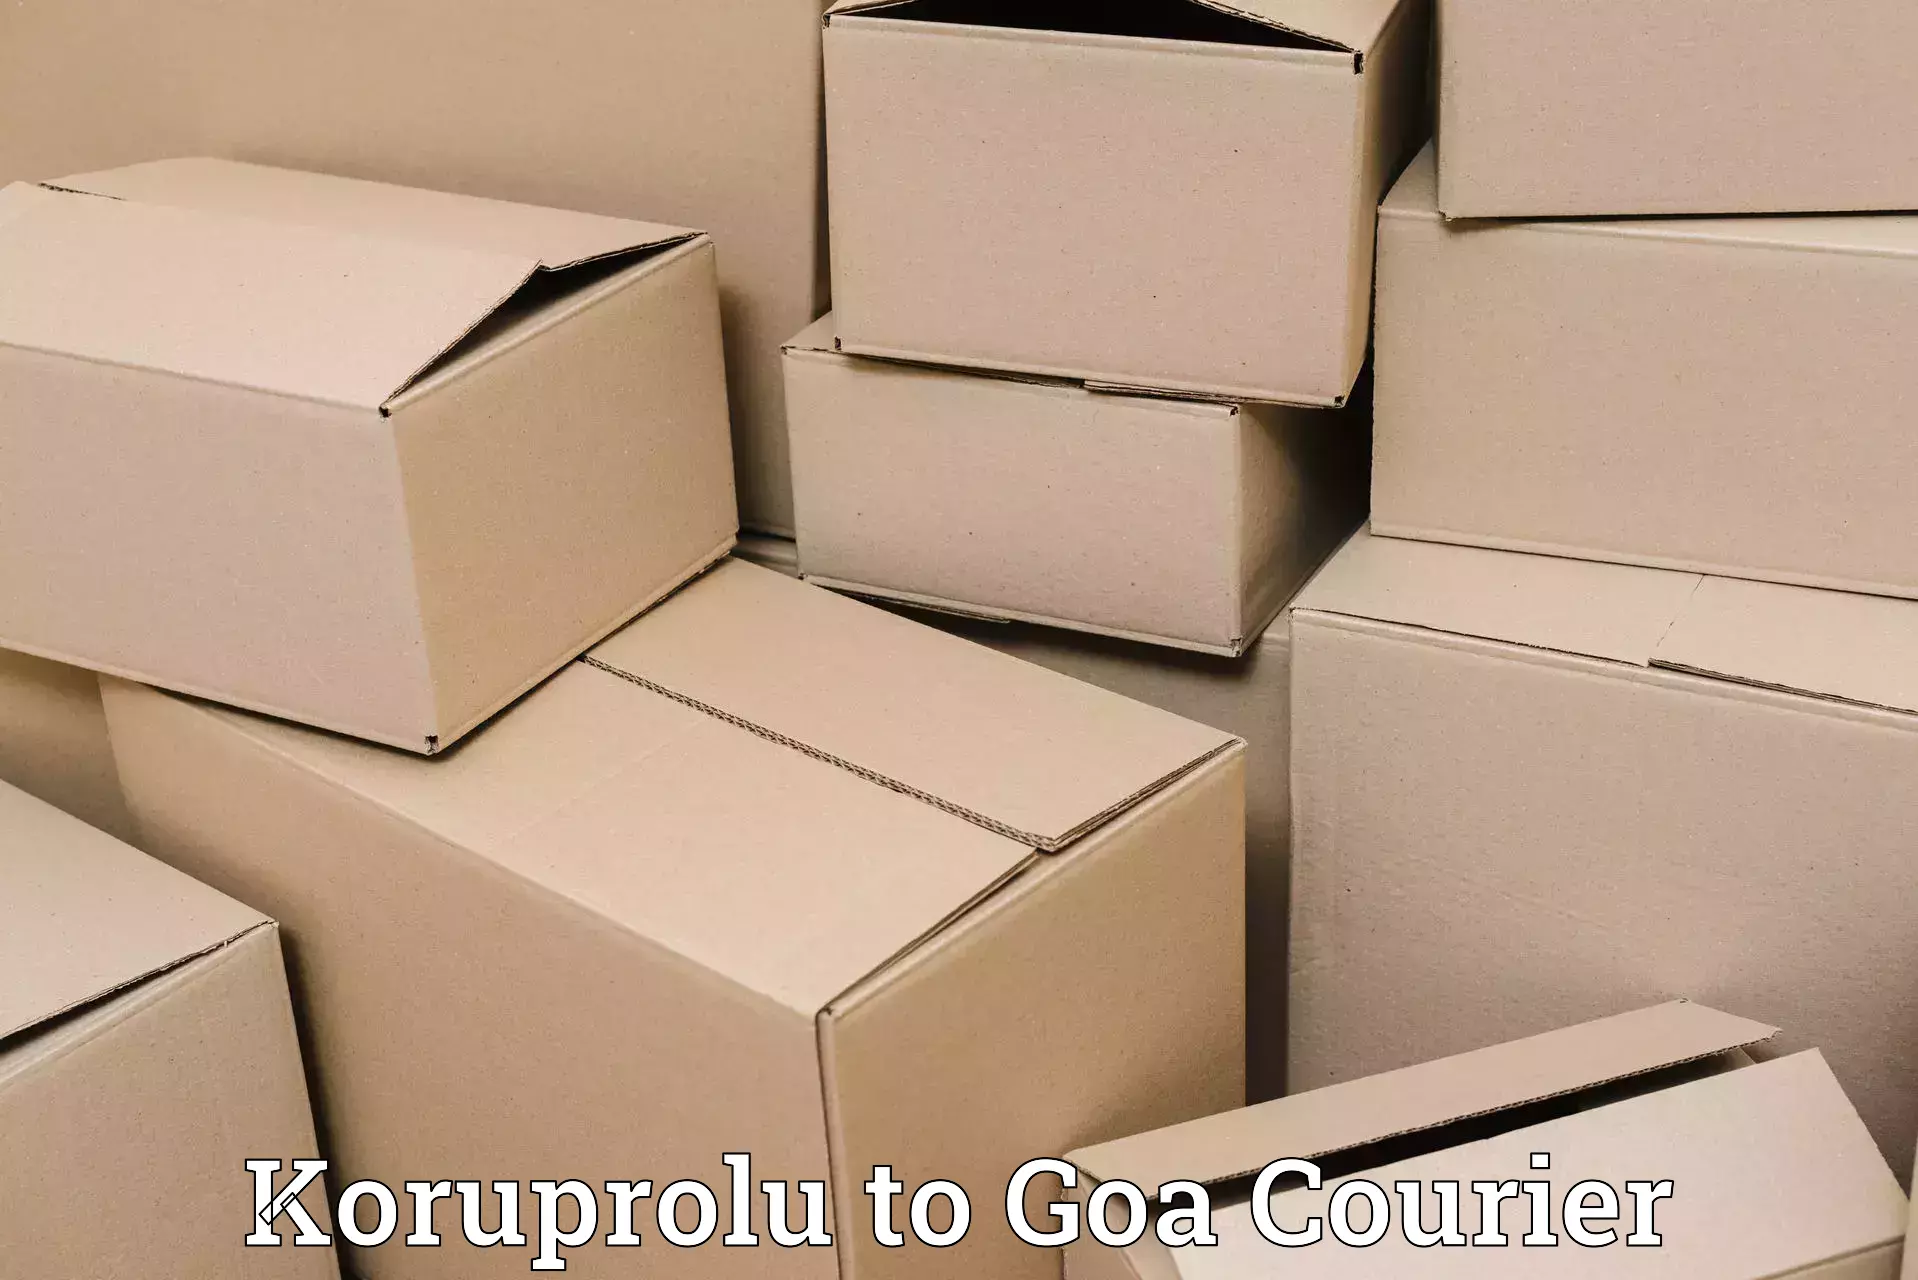 Easy access courier services Koruprolu to South Goa